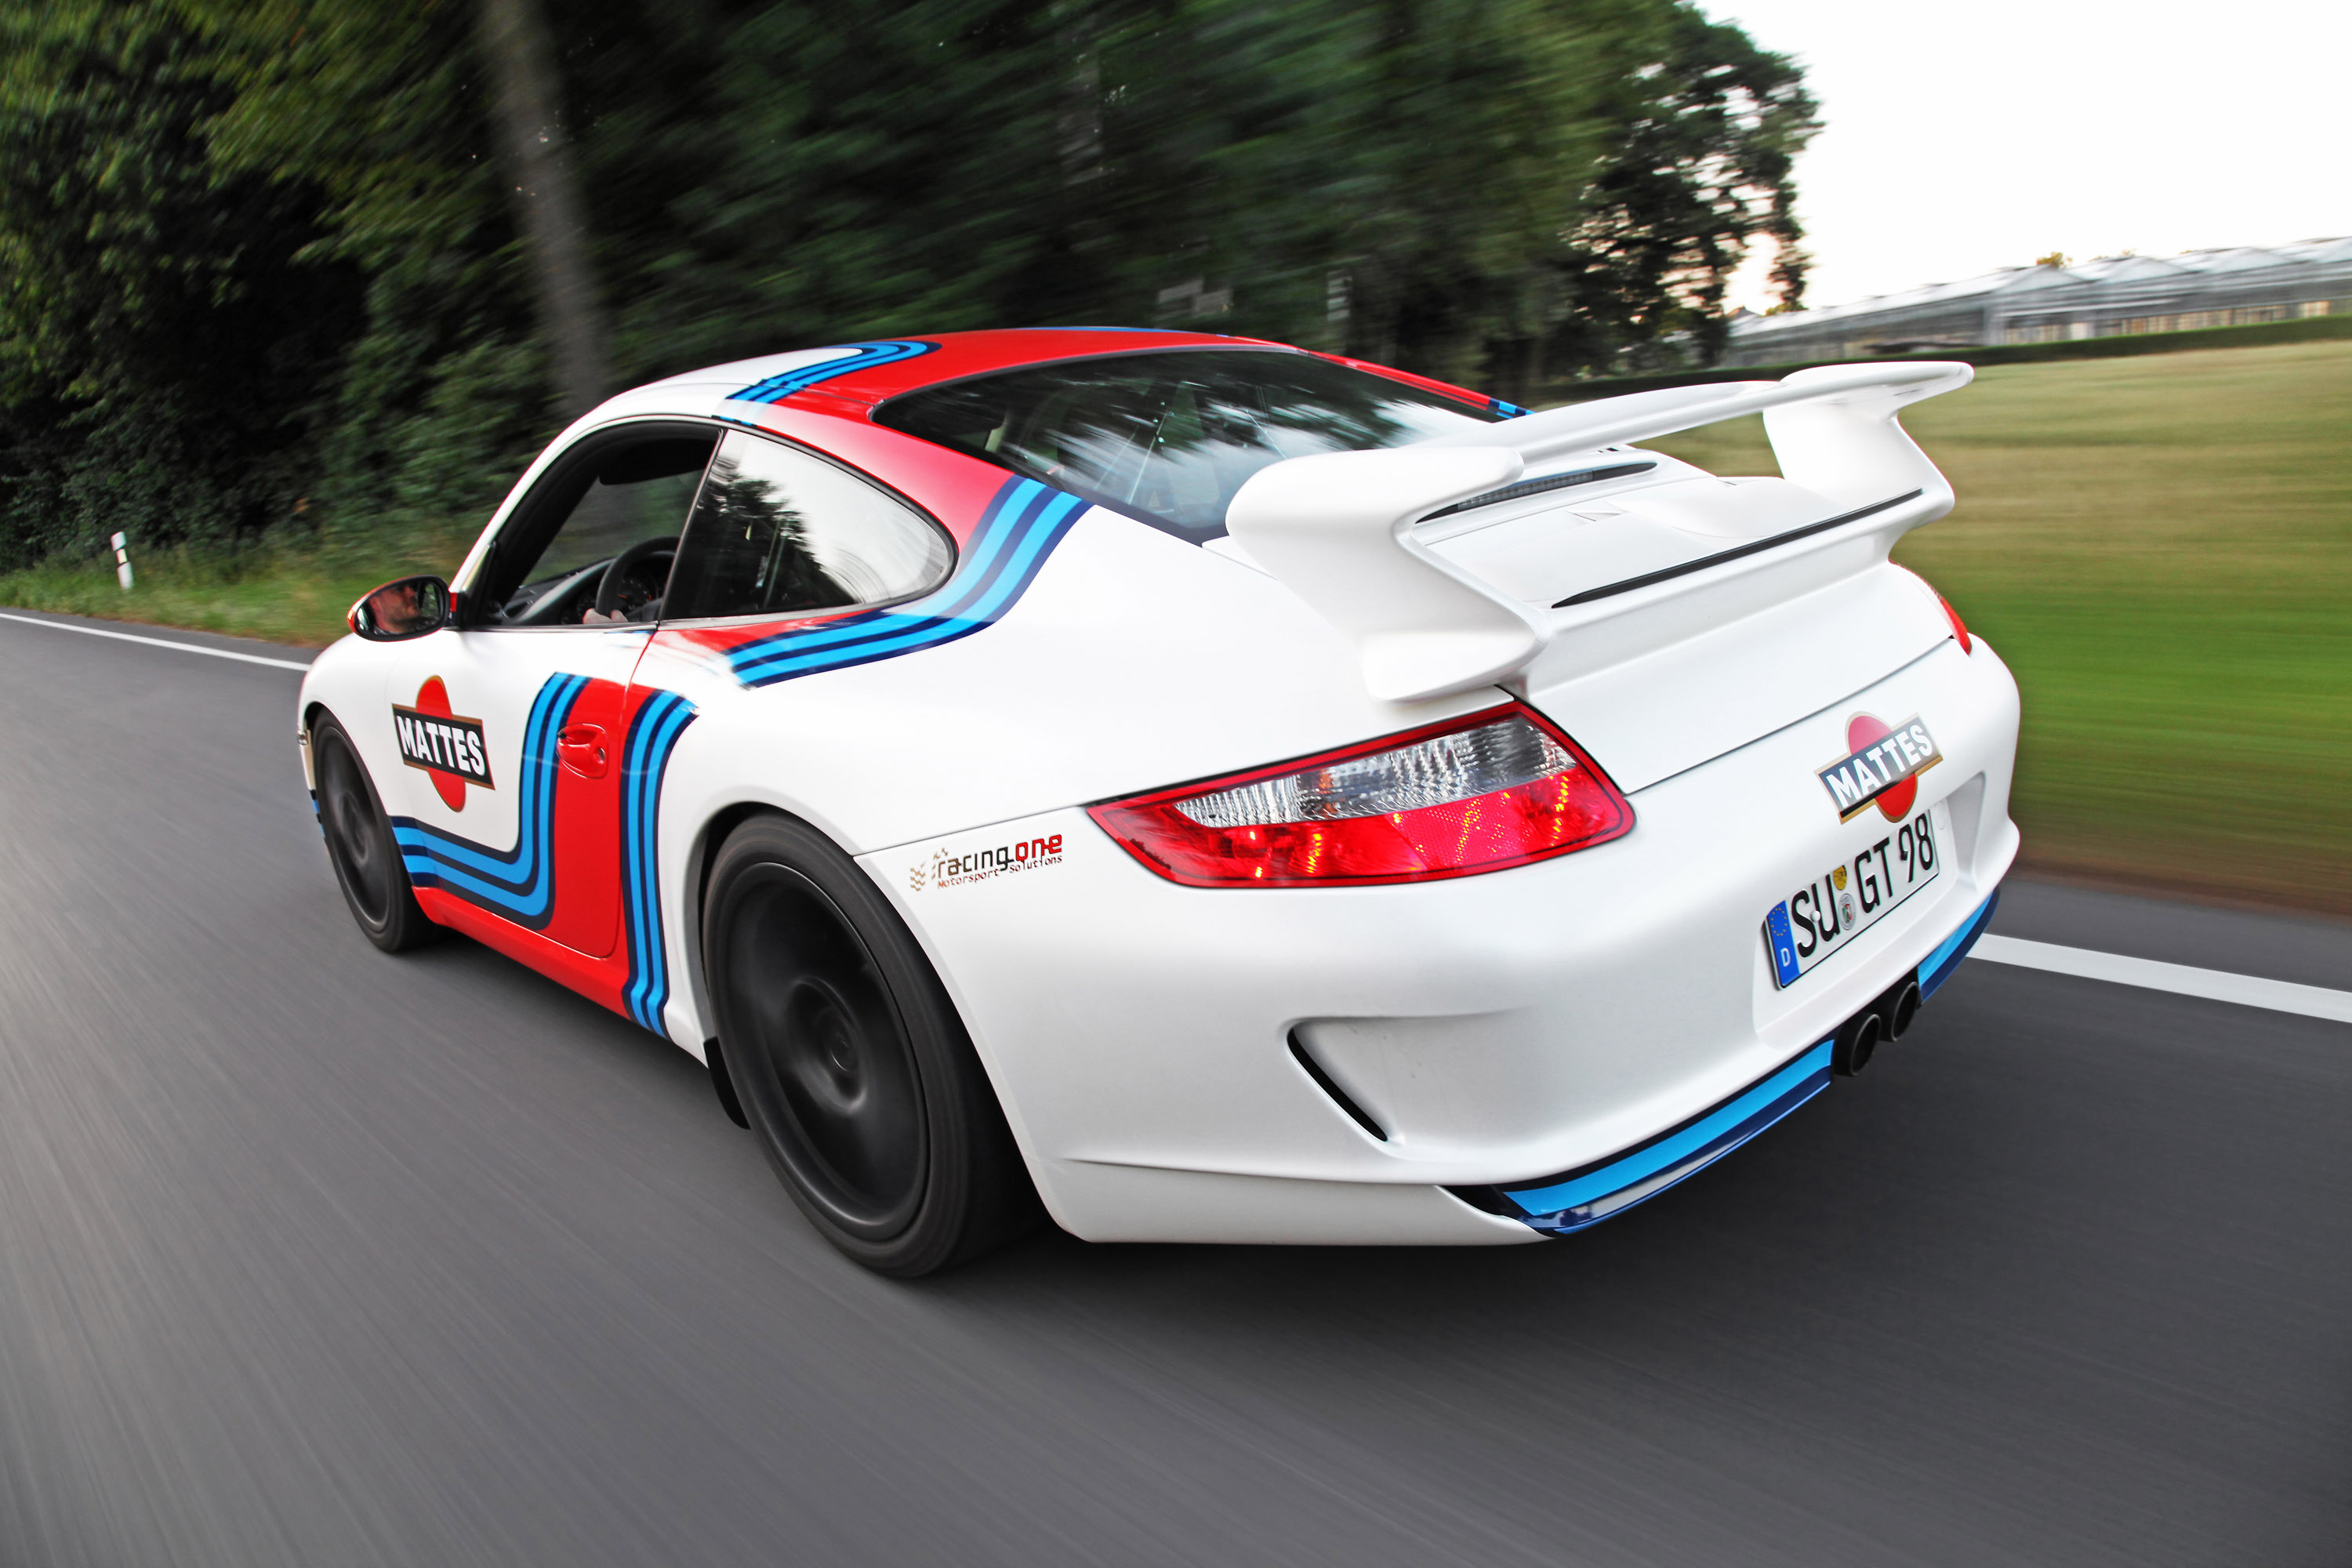 Cam Shaft Porsche 997 GT3